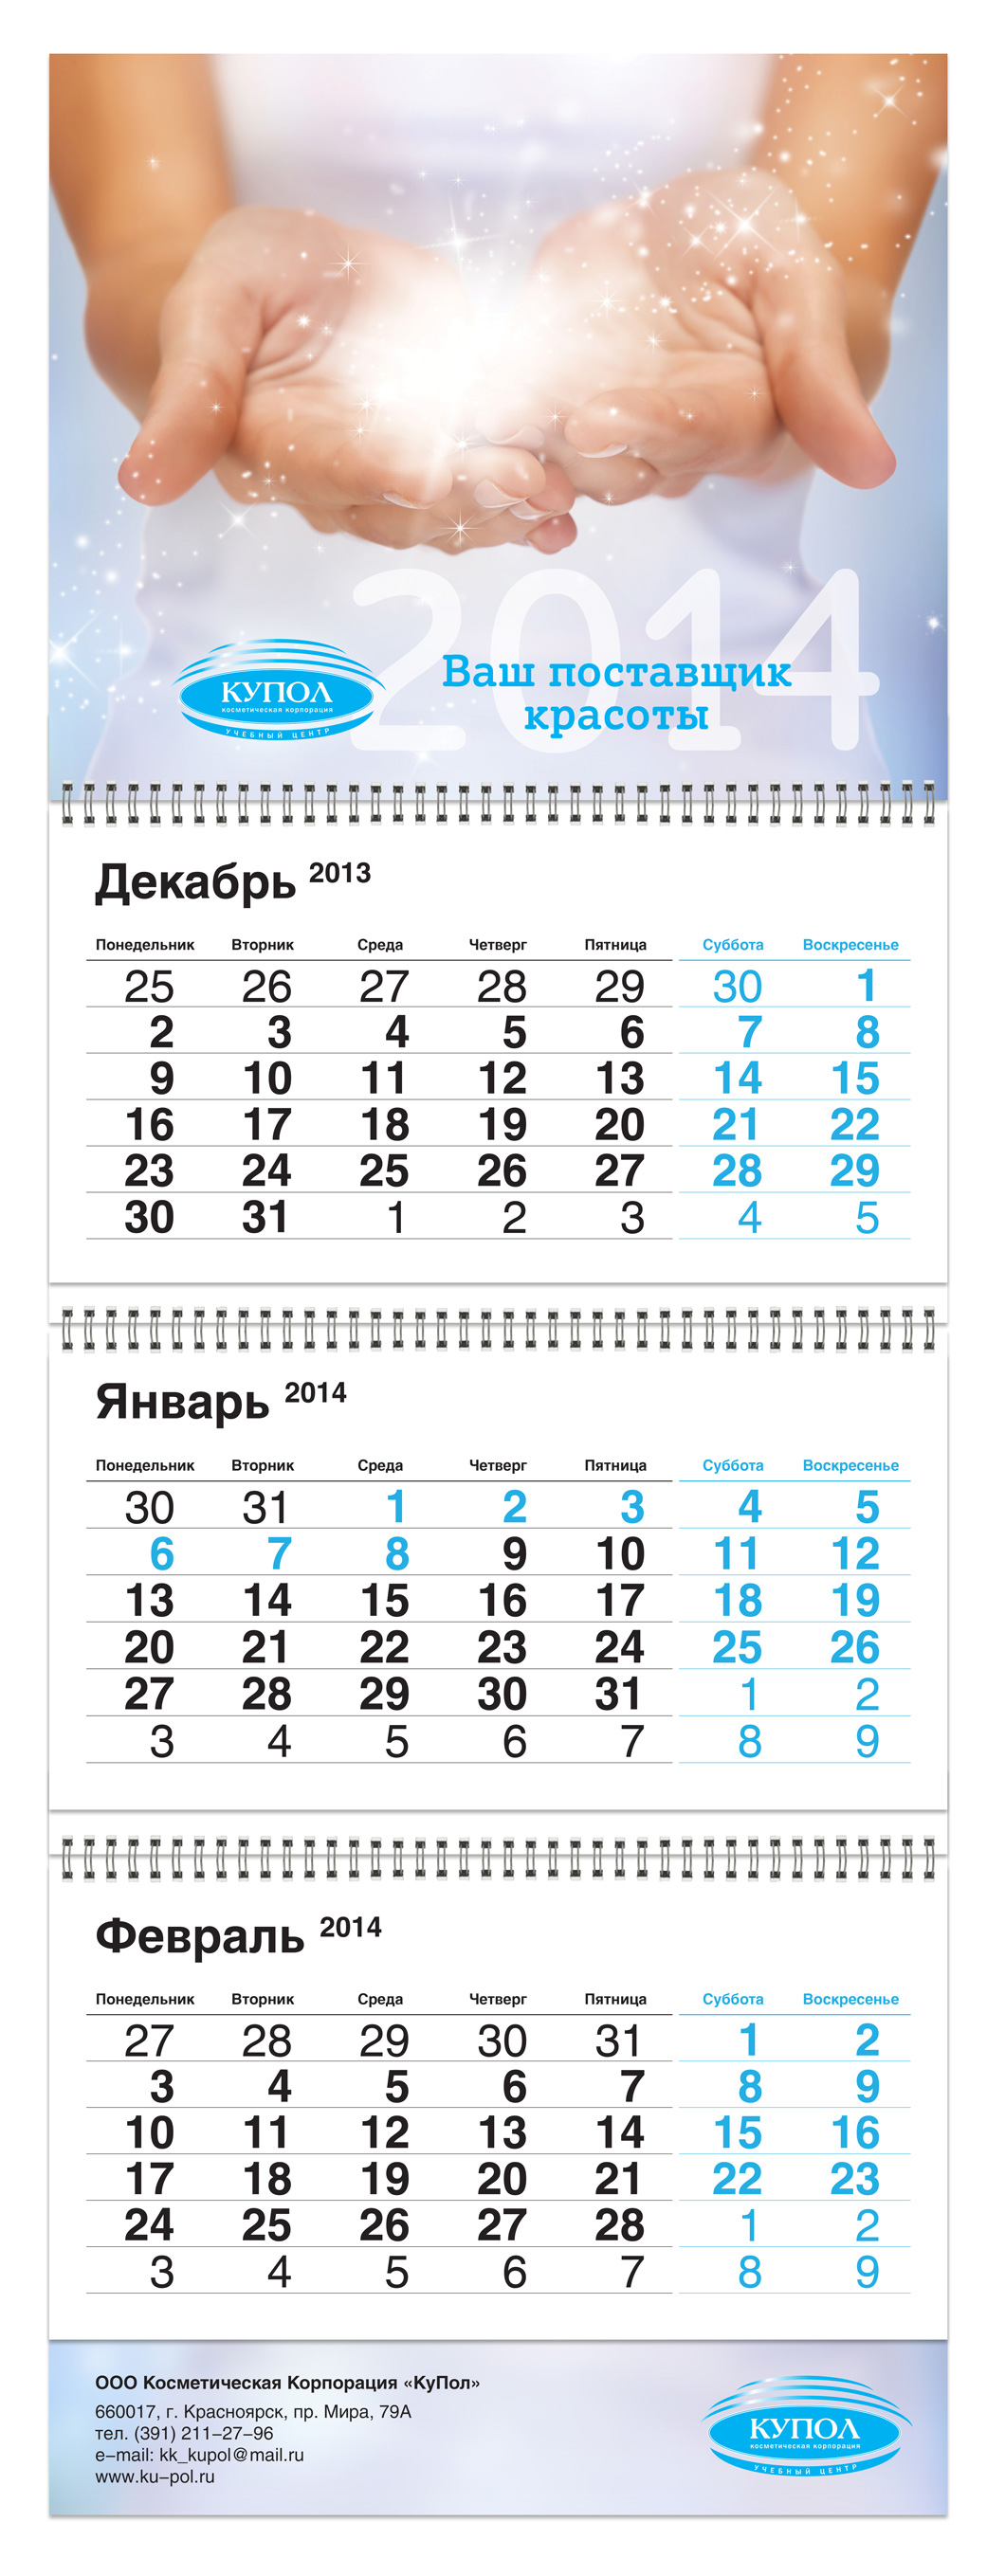 Квартальный календарь косметической корпорации «КуПол»